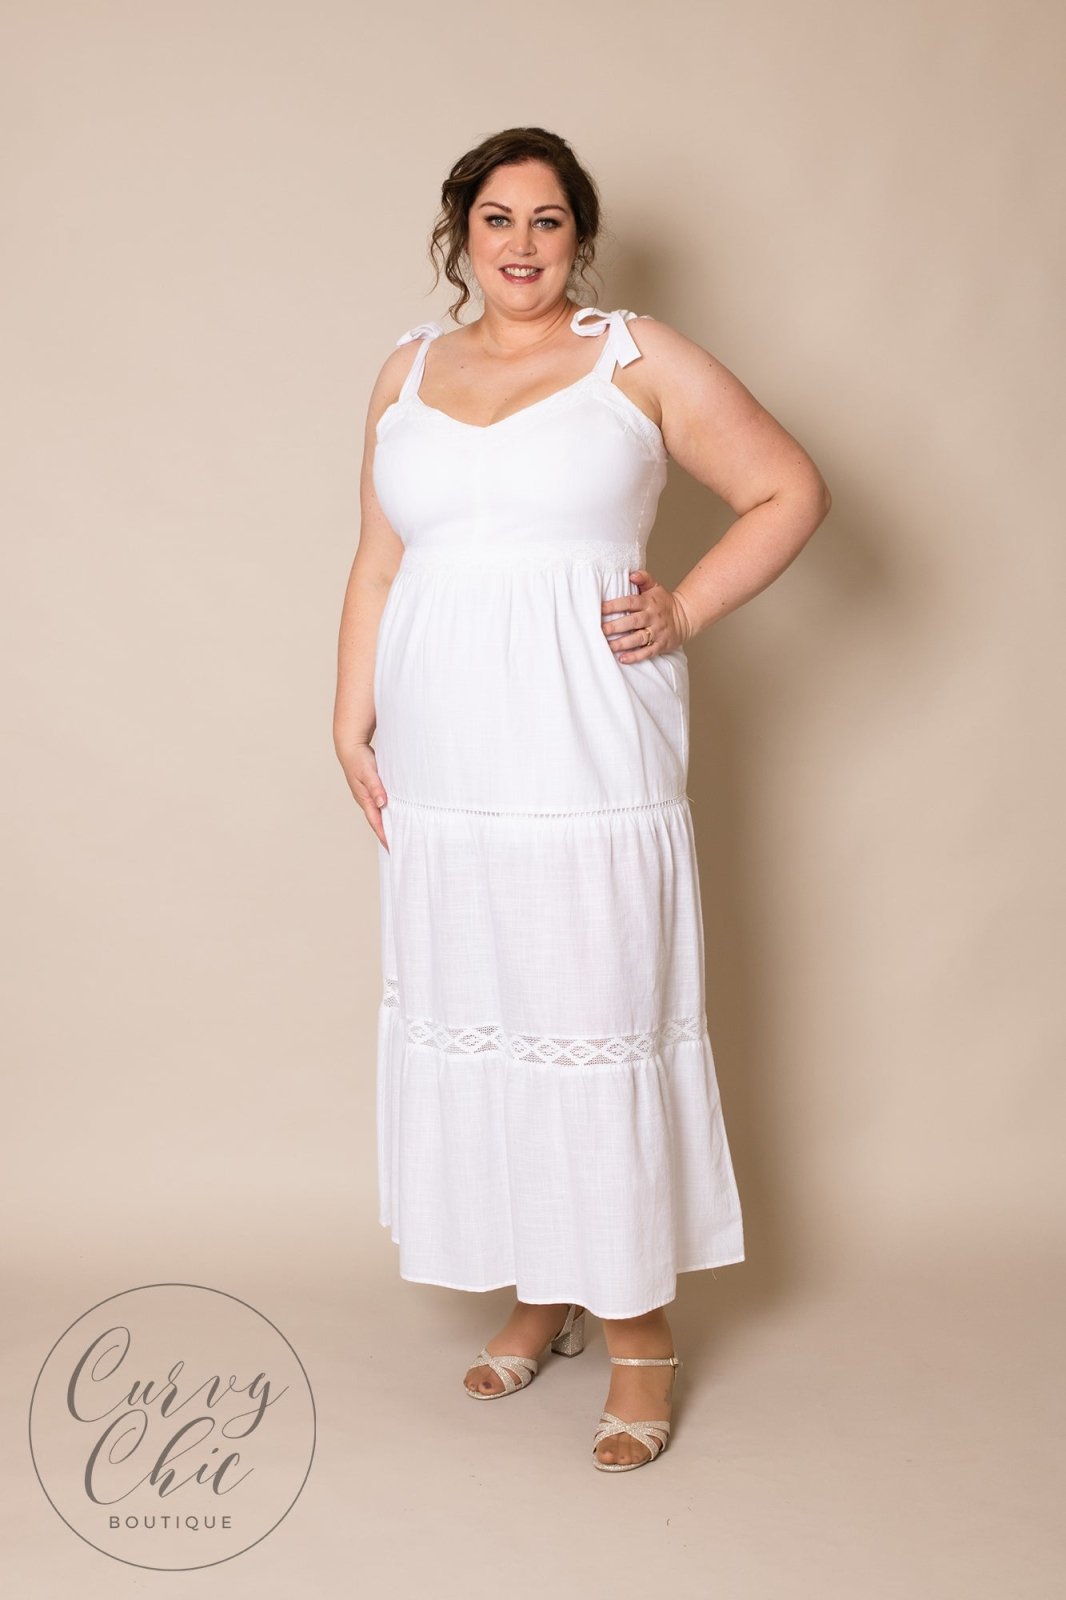 White Cotton Plus Size Dress - Curvy Chic Boutique